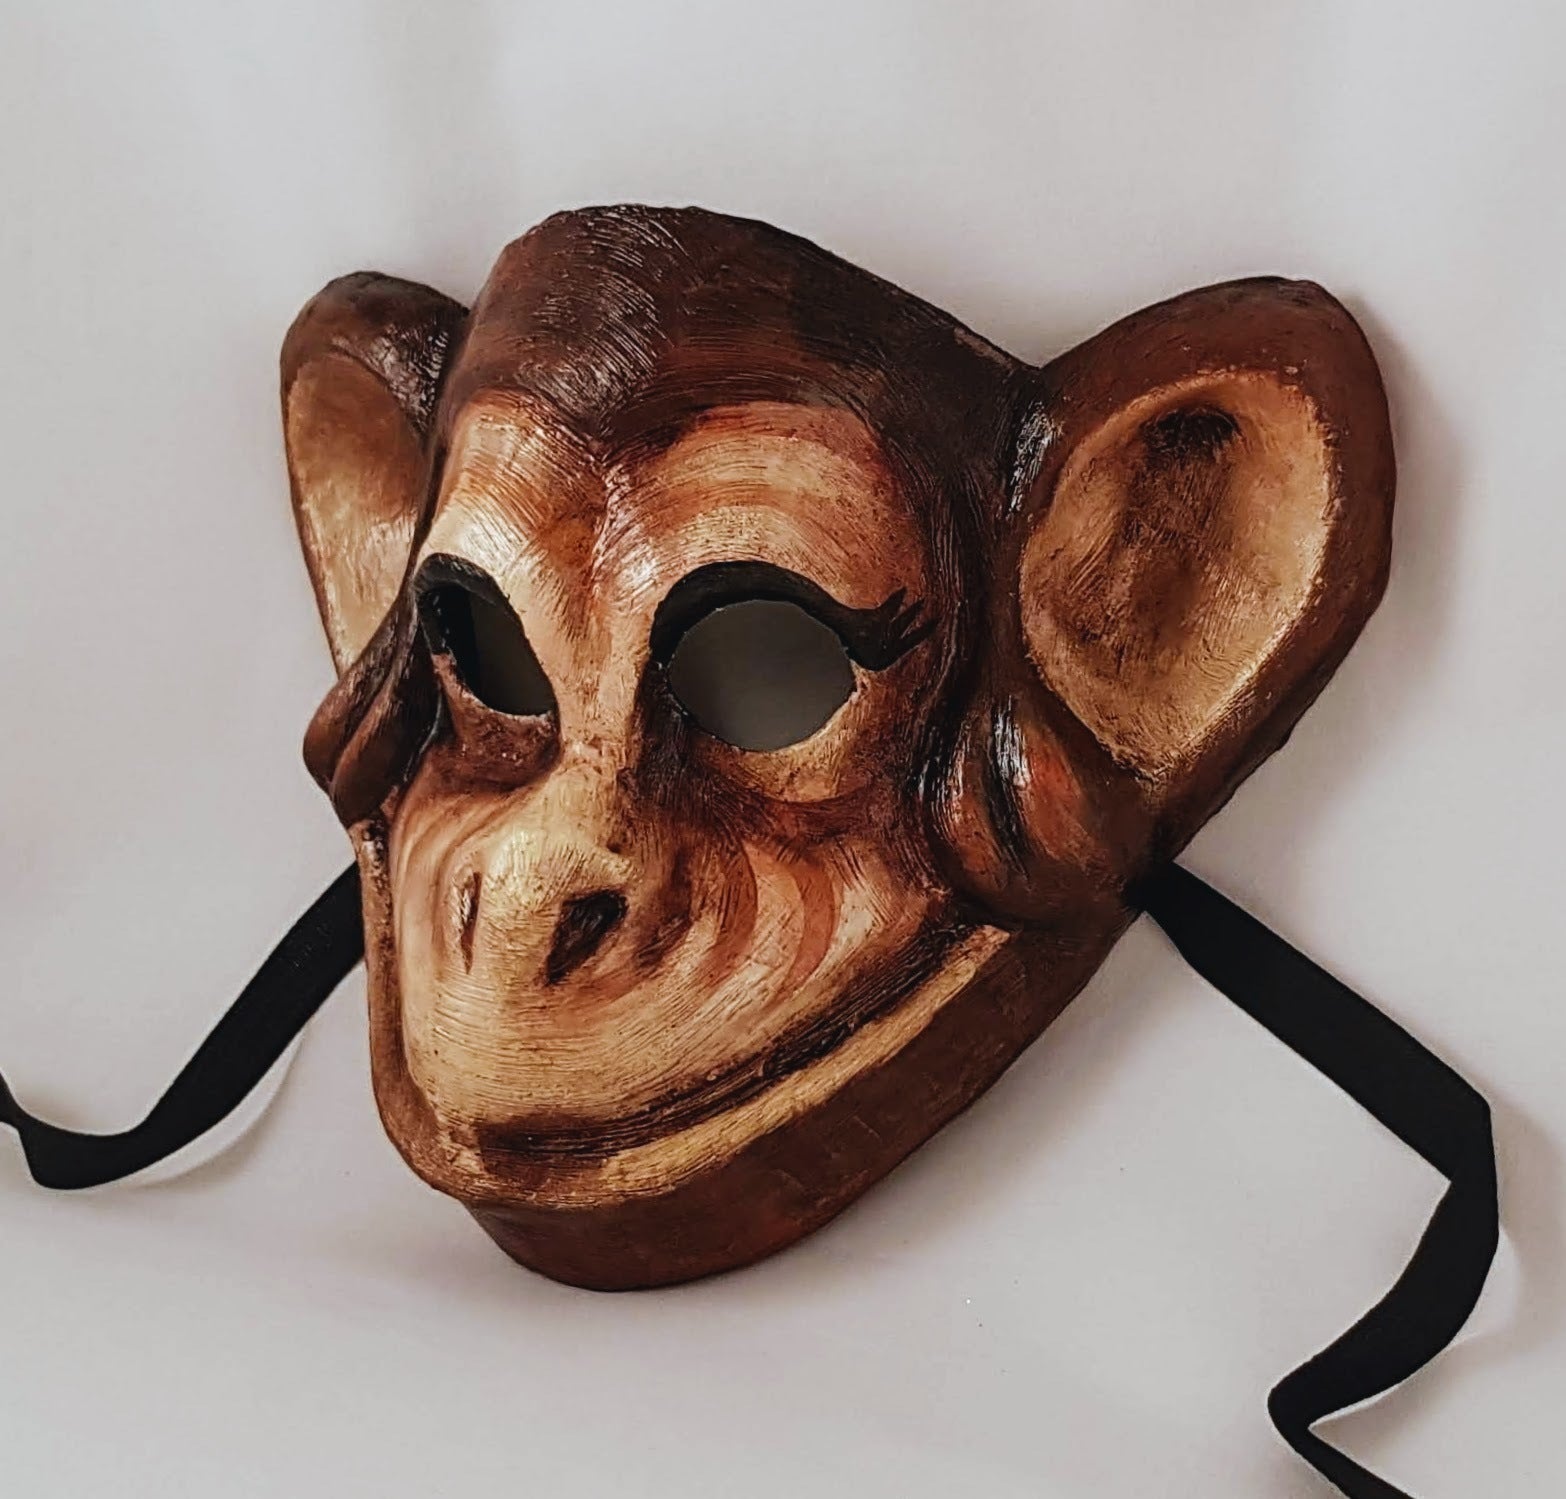 maschera scimmia